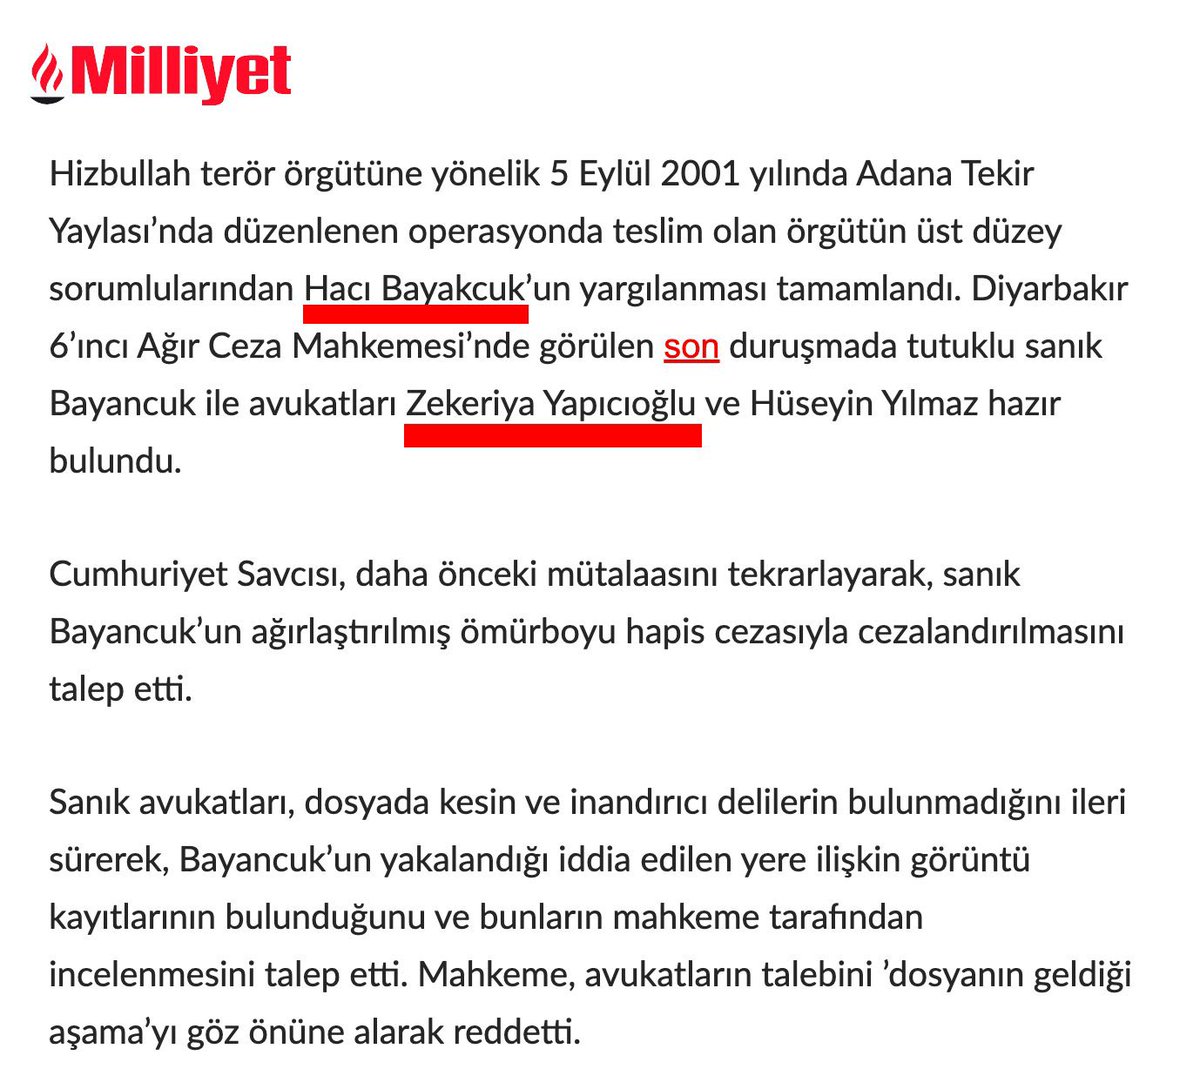 @y_kursadyilmaz Al oku, Ali Gaffar Okkan’ın katilinin avukatı Zekeriya yapıcıoğlu, adil seçimleri
15 temmuza benzetmeye utanmıyor musunuz hiç. MHP zaten yoktu seçimden sonra esamesi okunmayacak